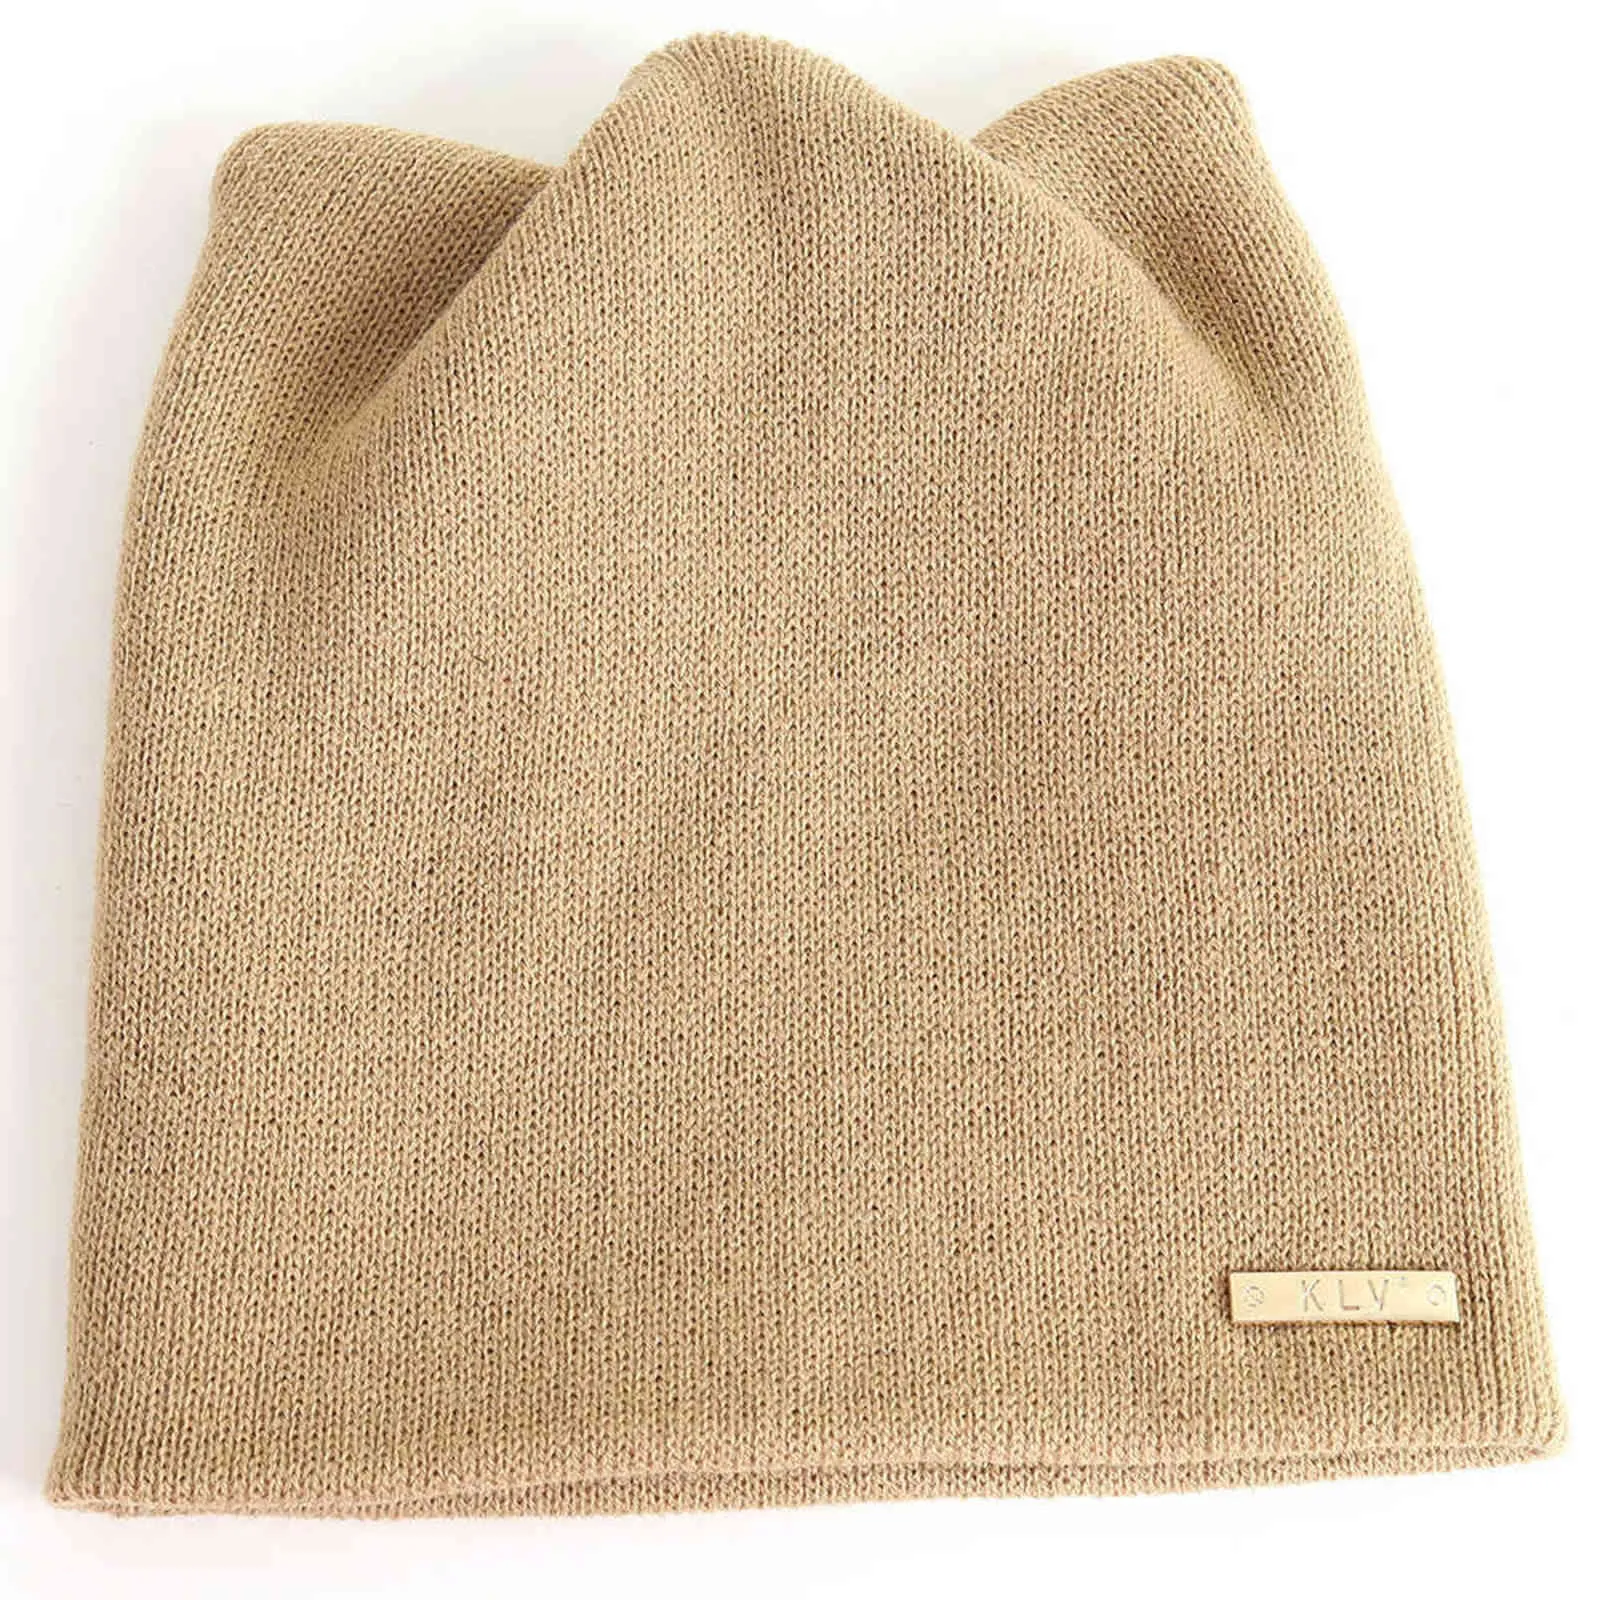 Vinter hattar för kvinnor mode varma kvinnor höst och vinter varm katt hattar öronmuffar hatt beanie hatt ryska kepsar # 25 y21111